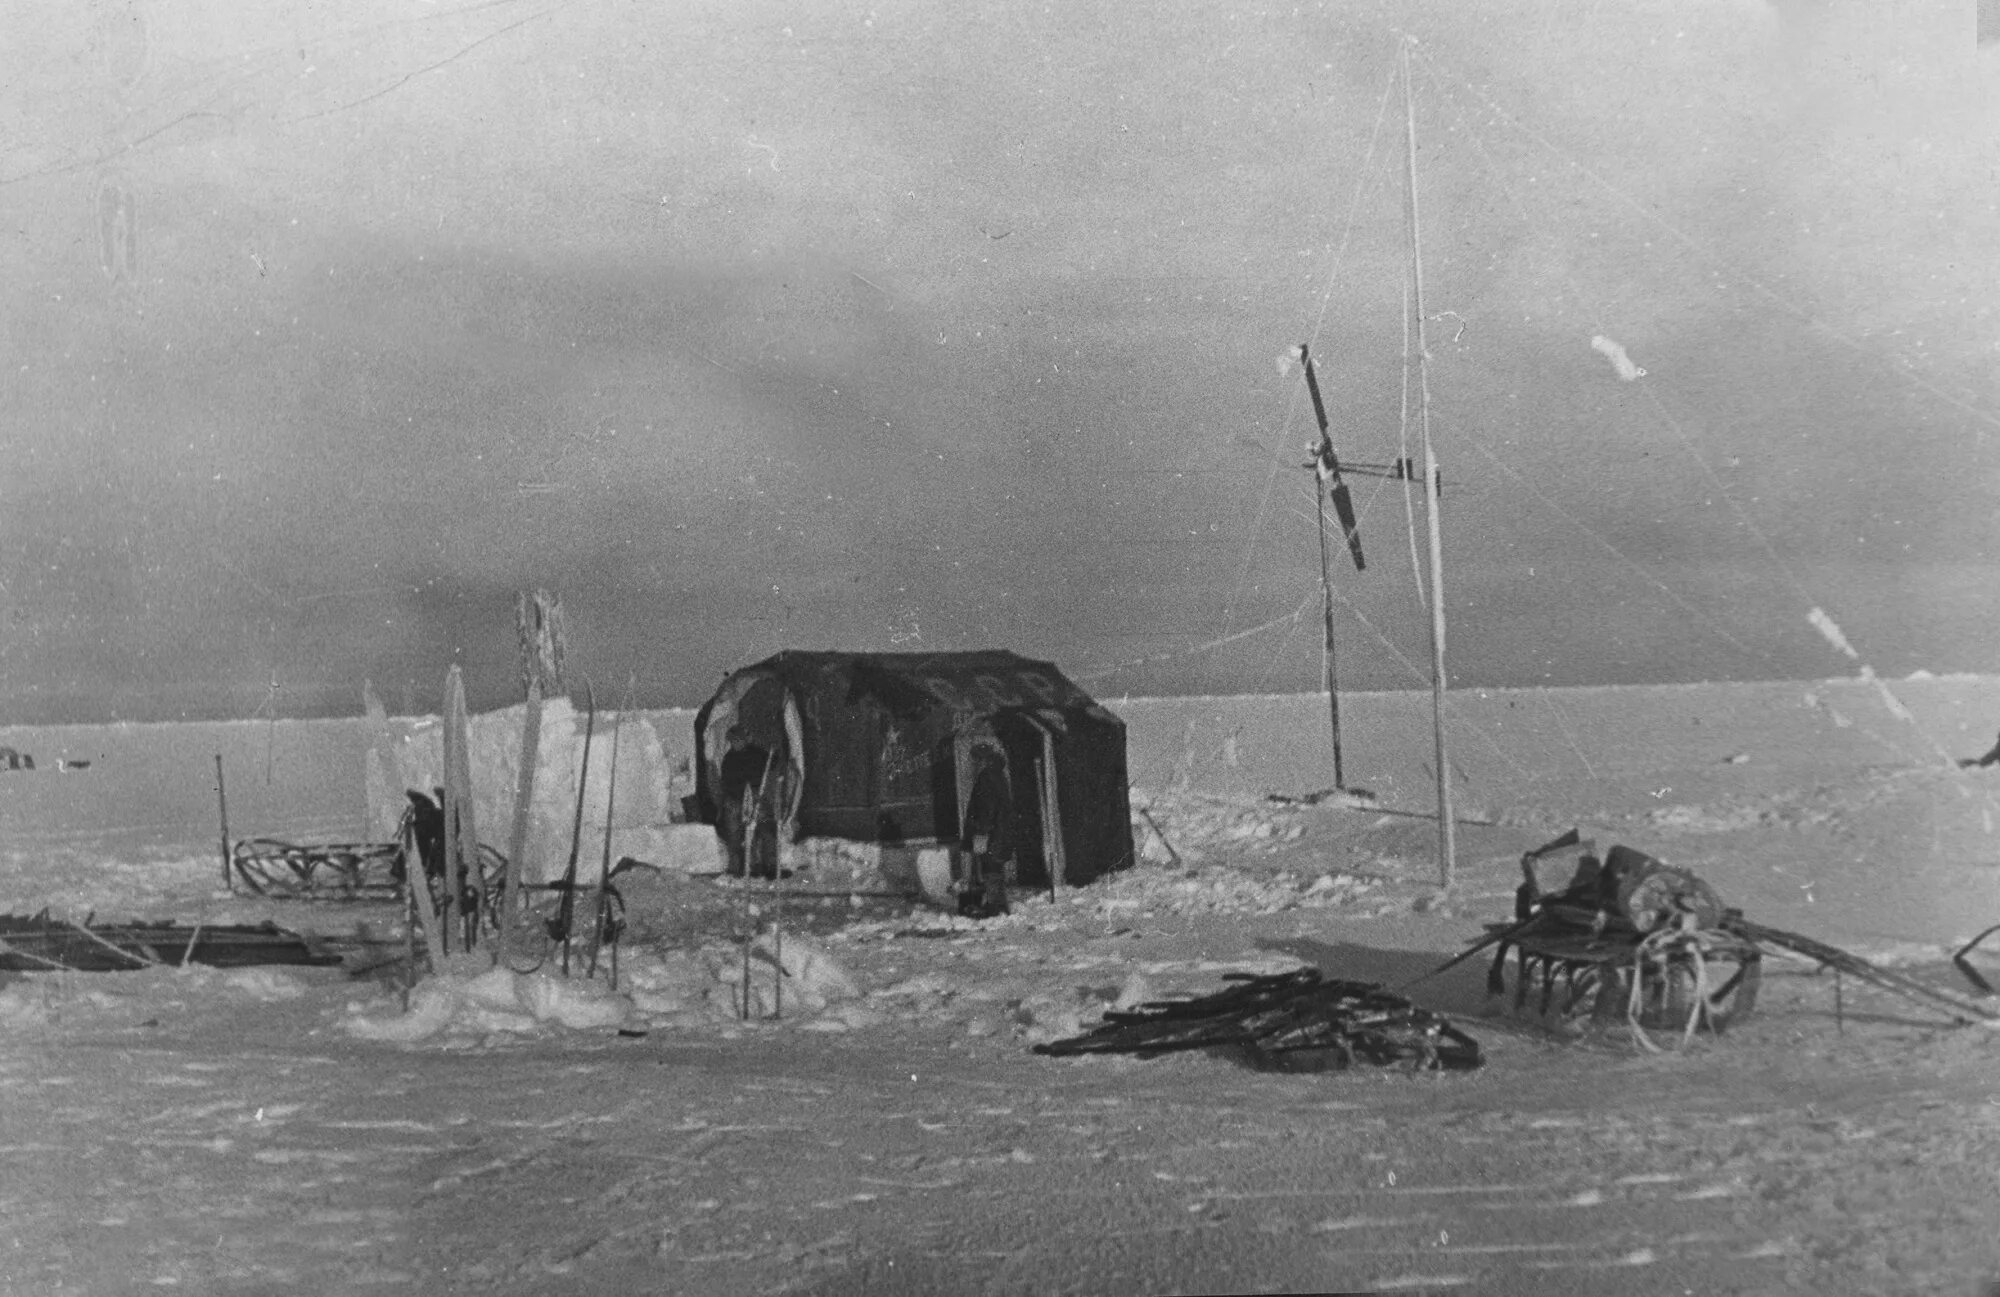 North pole 1. Дрейфующая Полярная станция Северный полюс 1. Северный полюс 1 станция дрейфующая первая Папанин. Полярная научно-исследовательская станция Северный полюс-1.